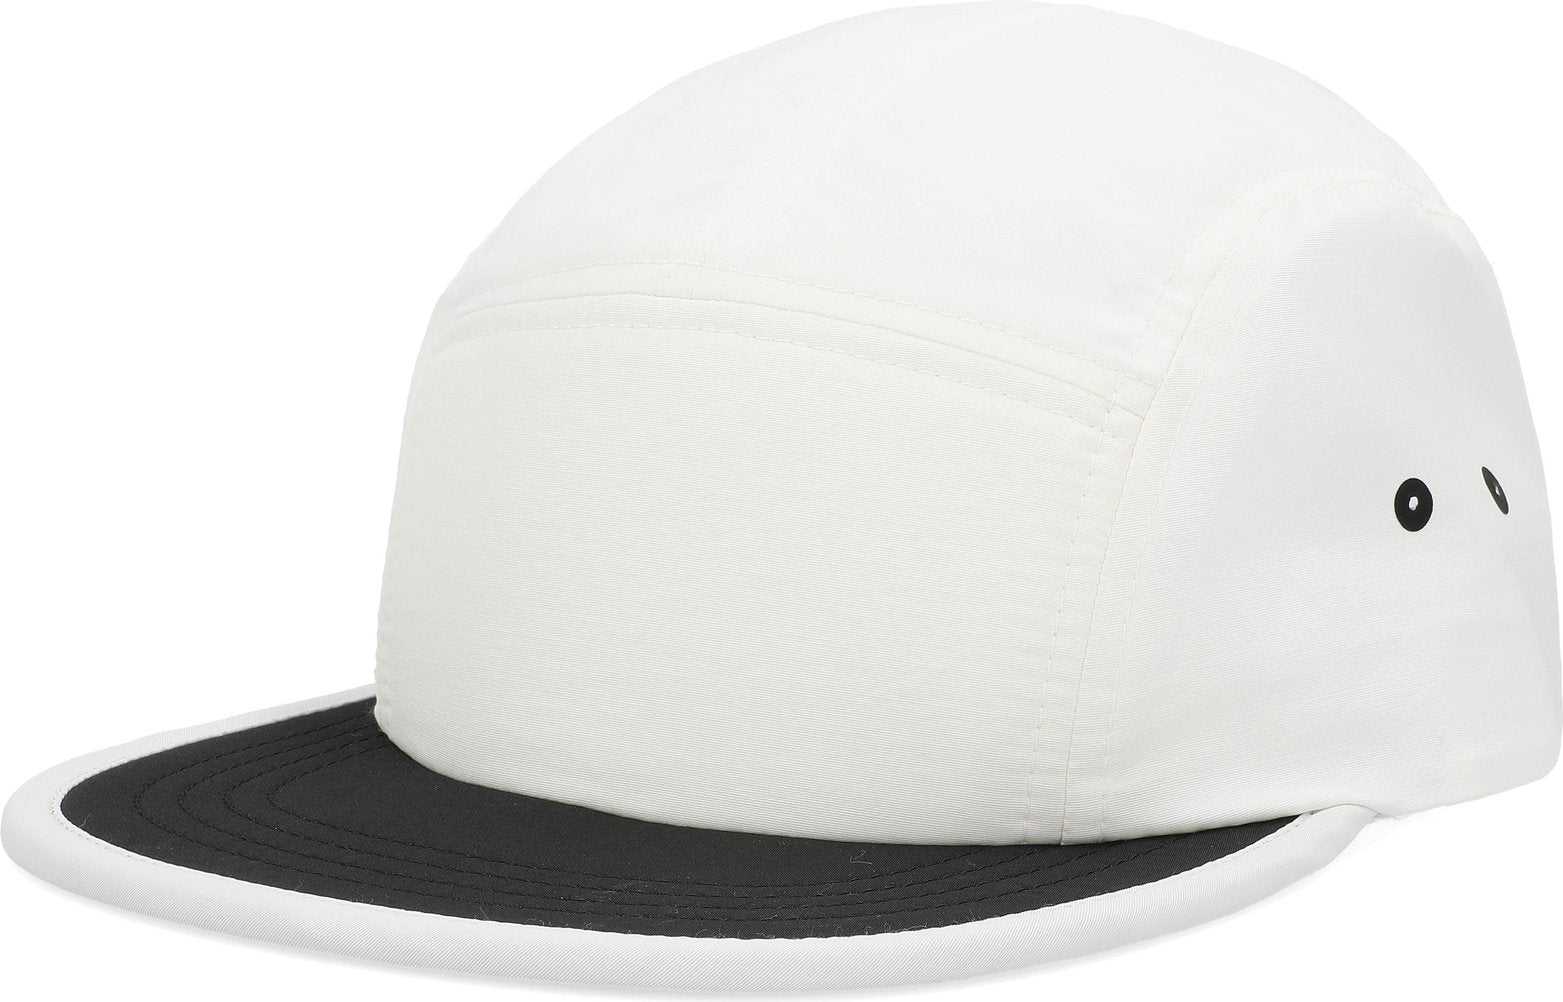 Pacific Headwear P781 Packable Camper Cap - White Black - HIT a Double